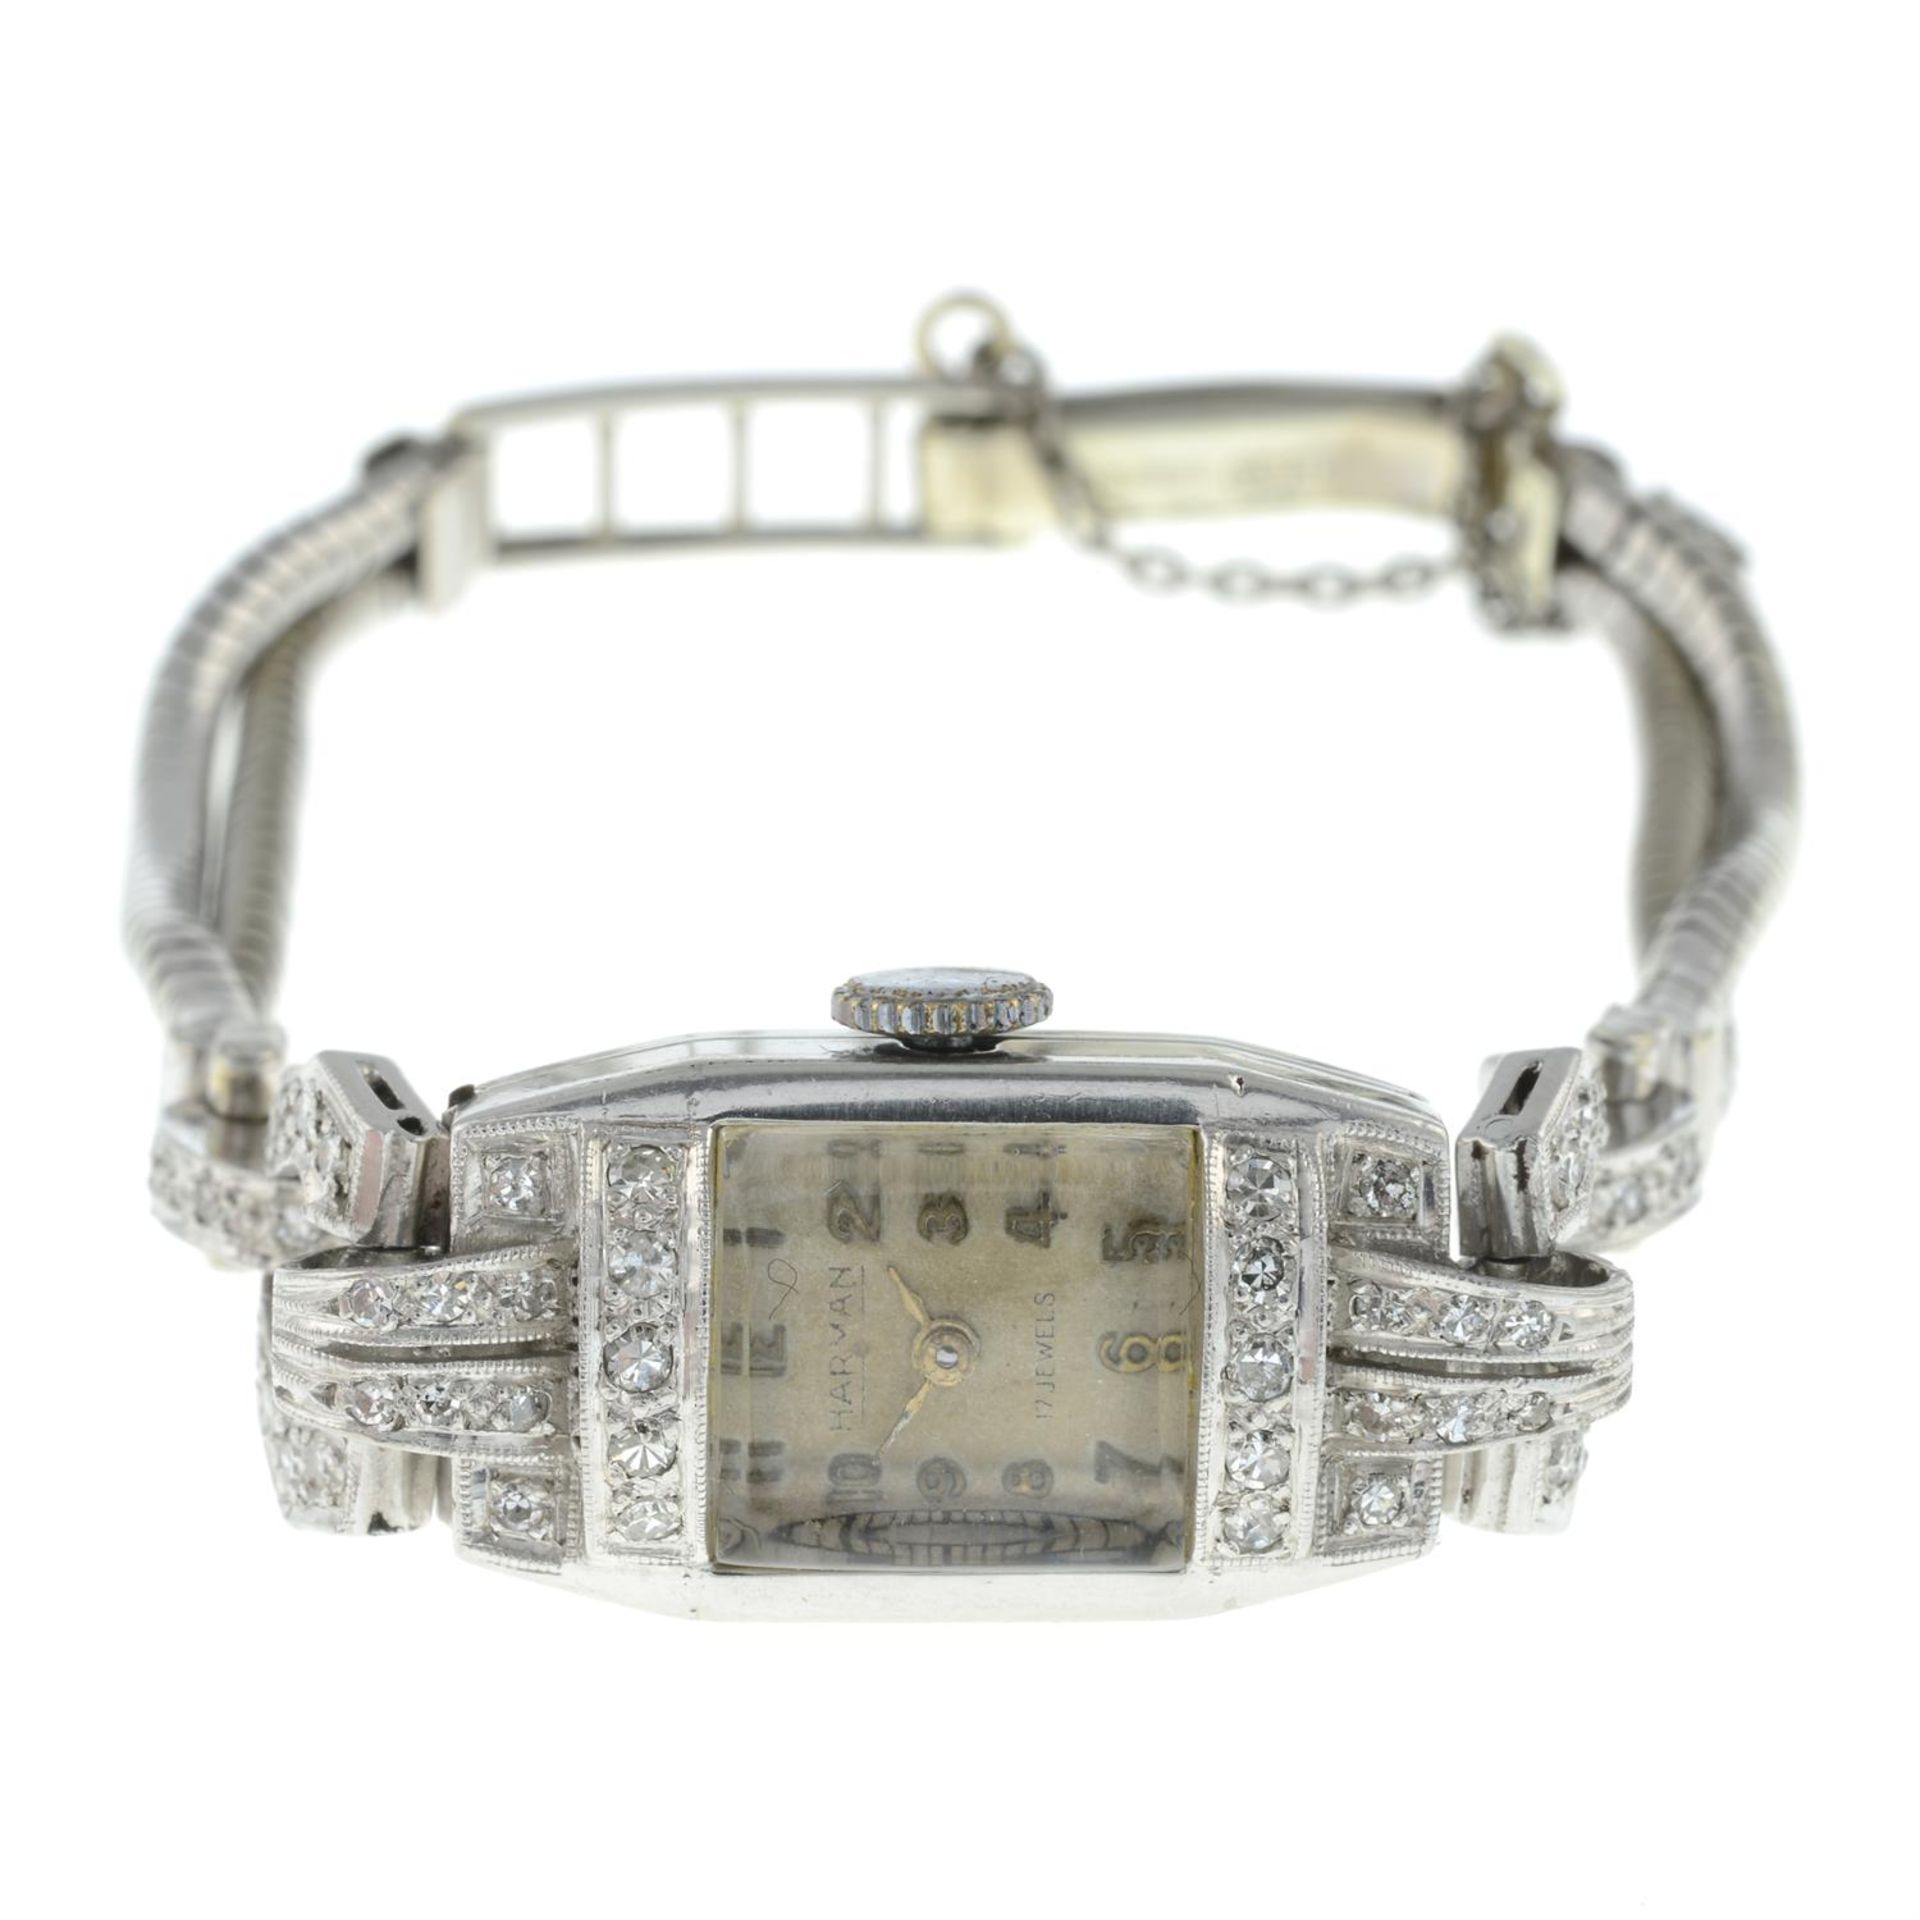 Mid 20th century 9ct gold diamond watch